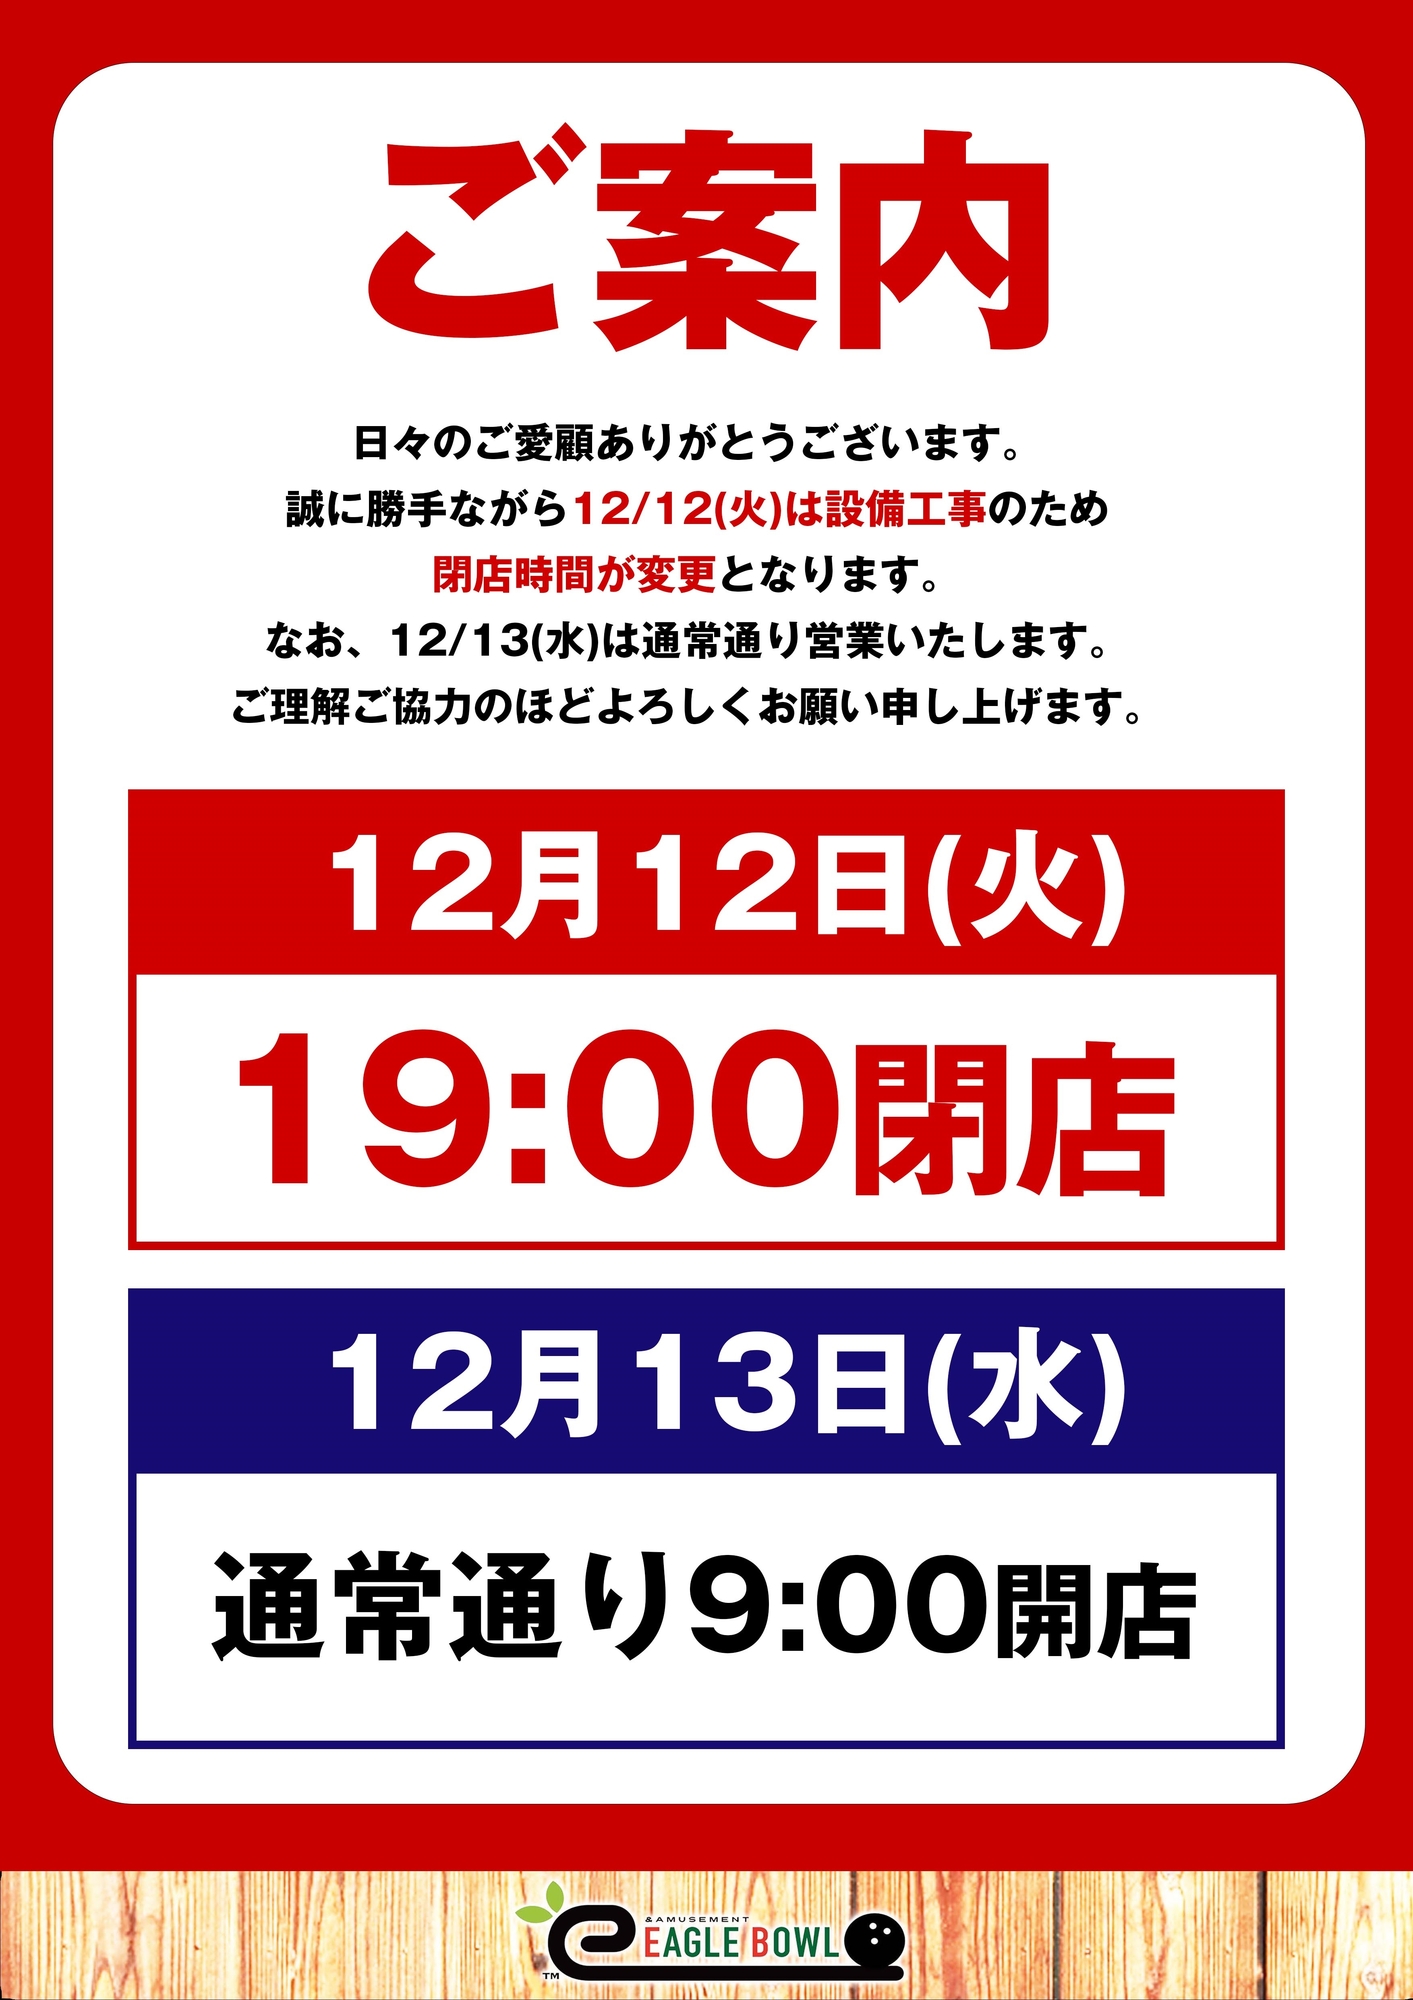 12/12(火)19:00閉店のお知らせ